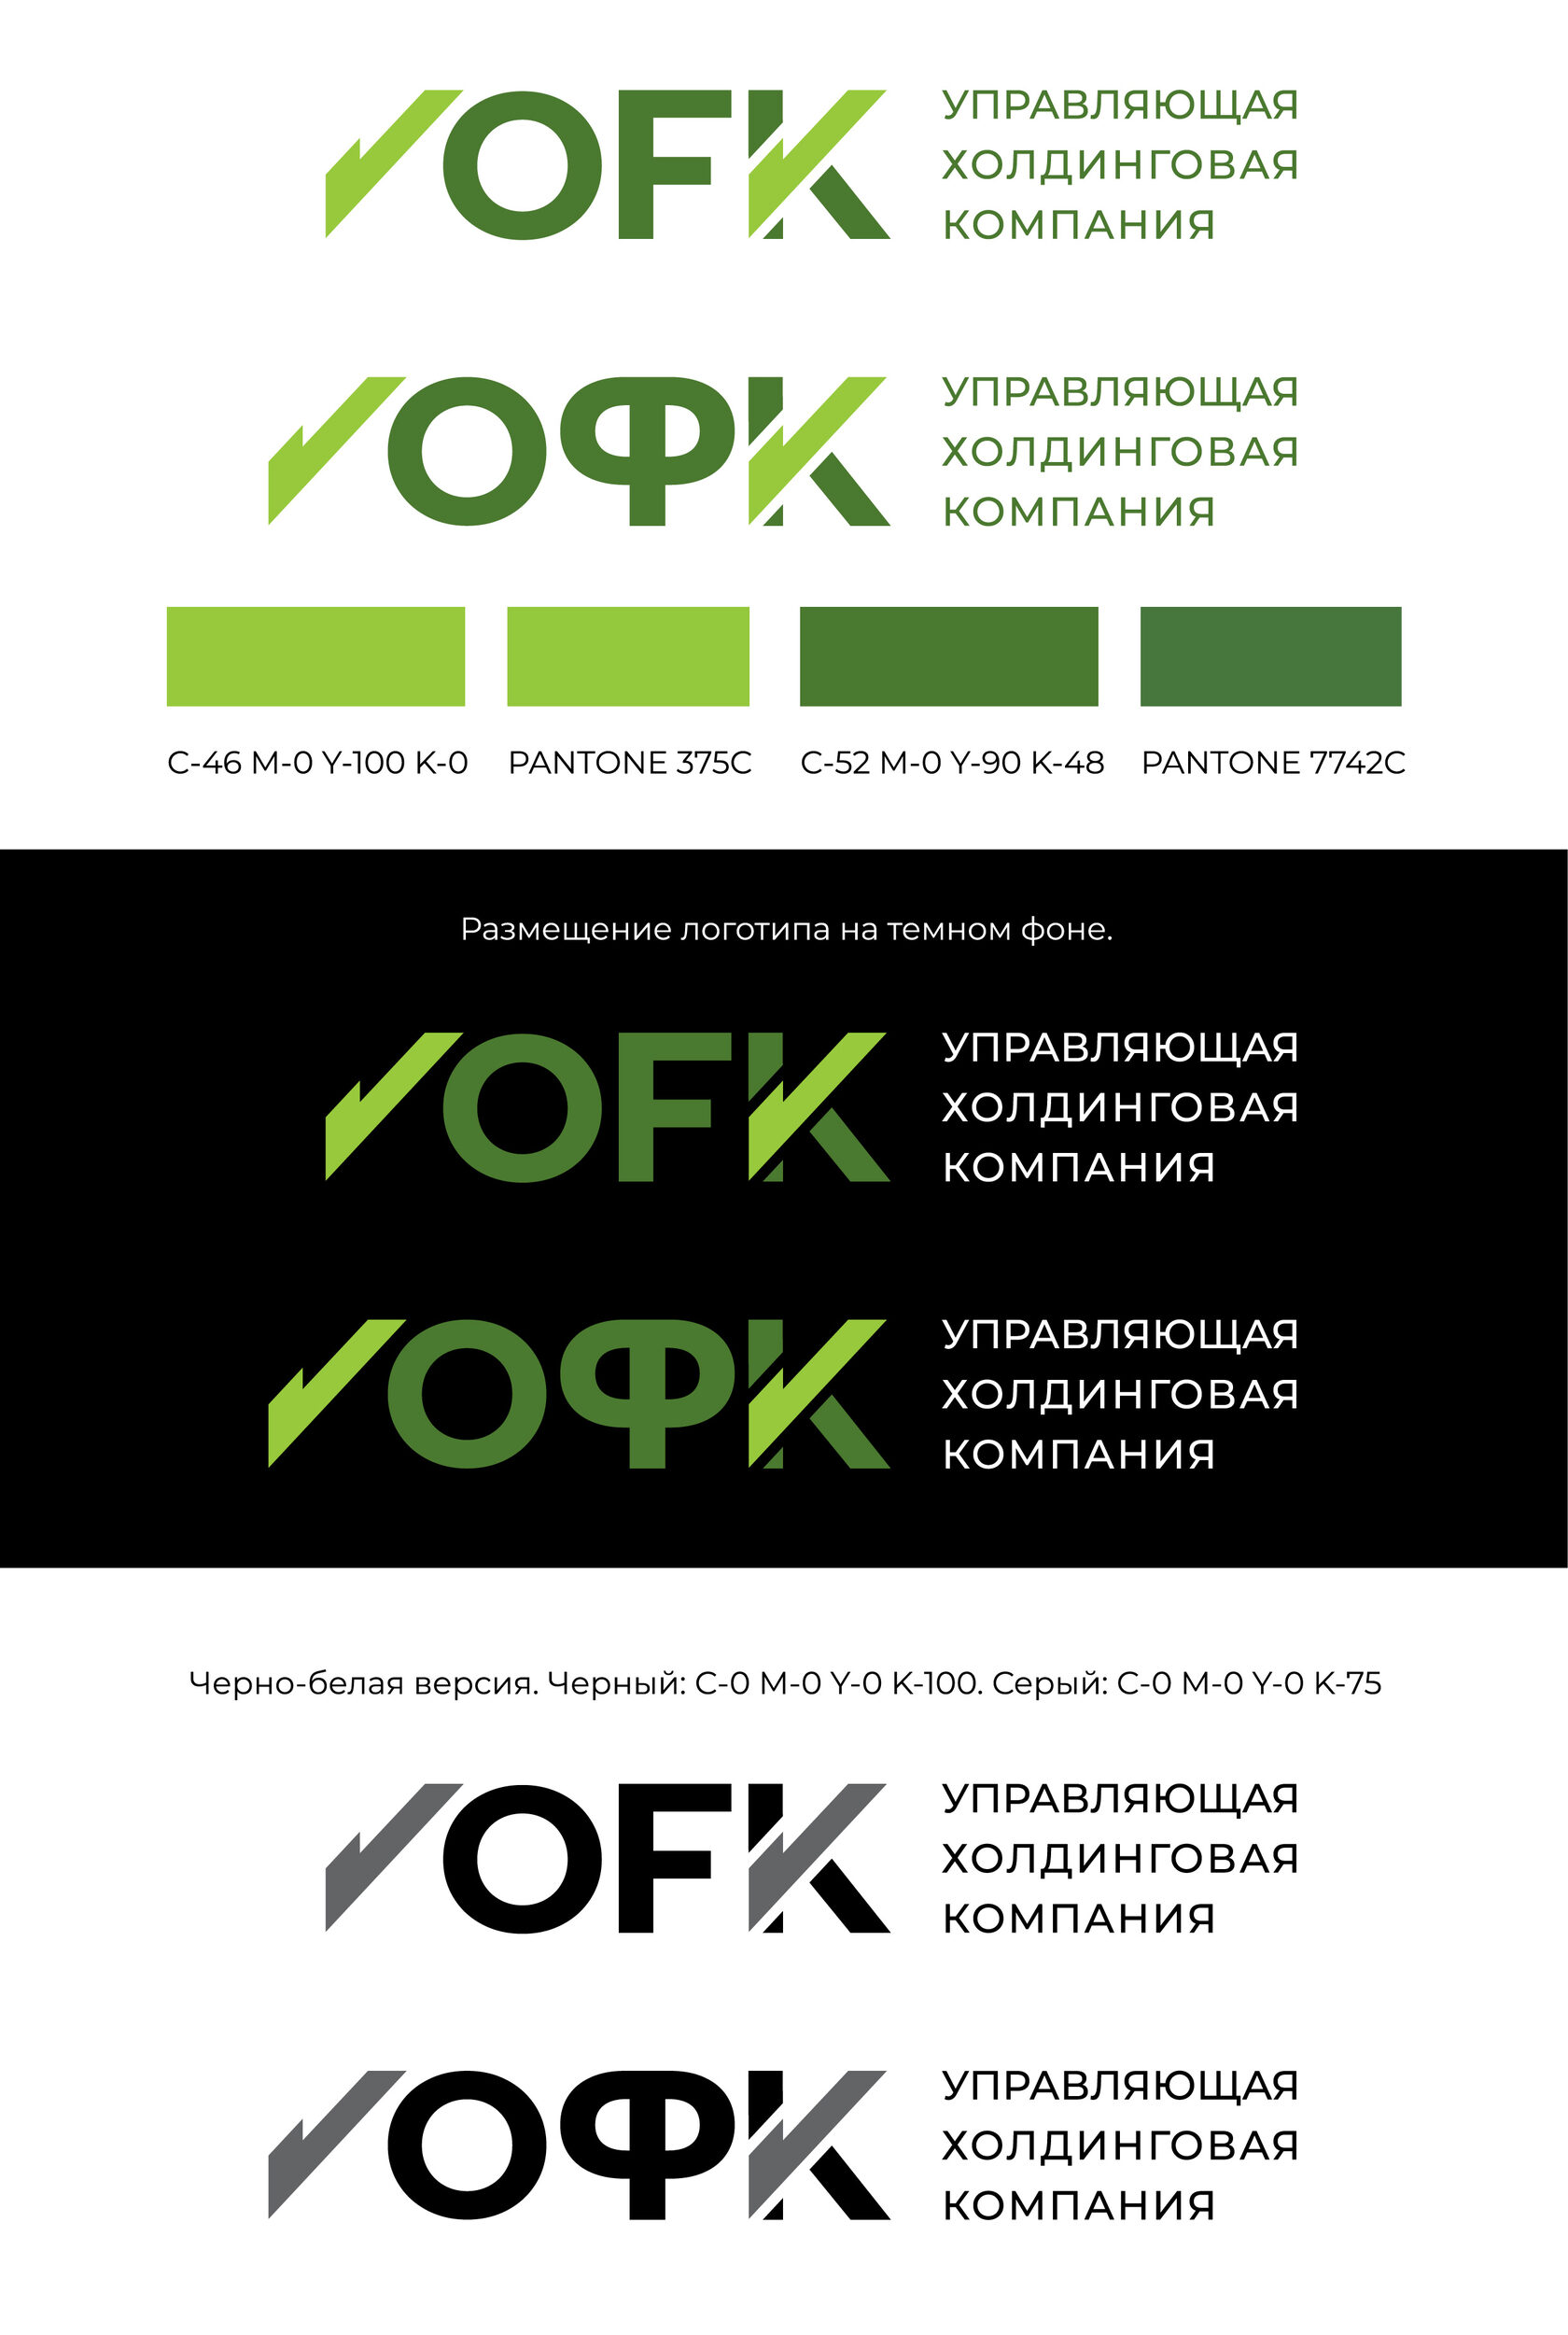 Заказать дизайн сайта в Минске: услуги по разработке дизайна сайта